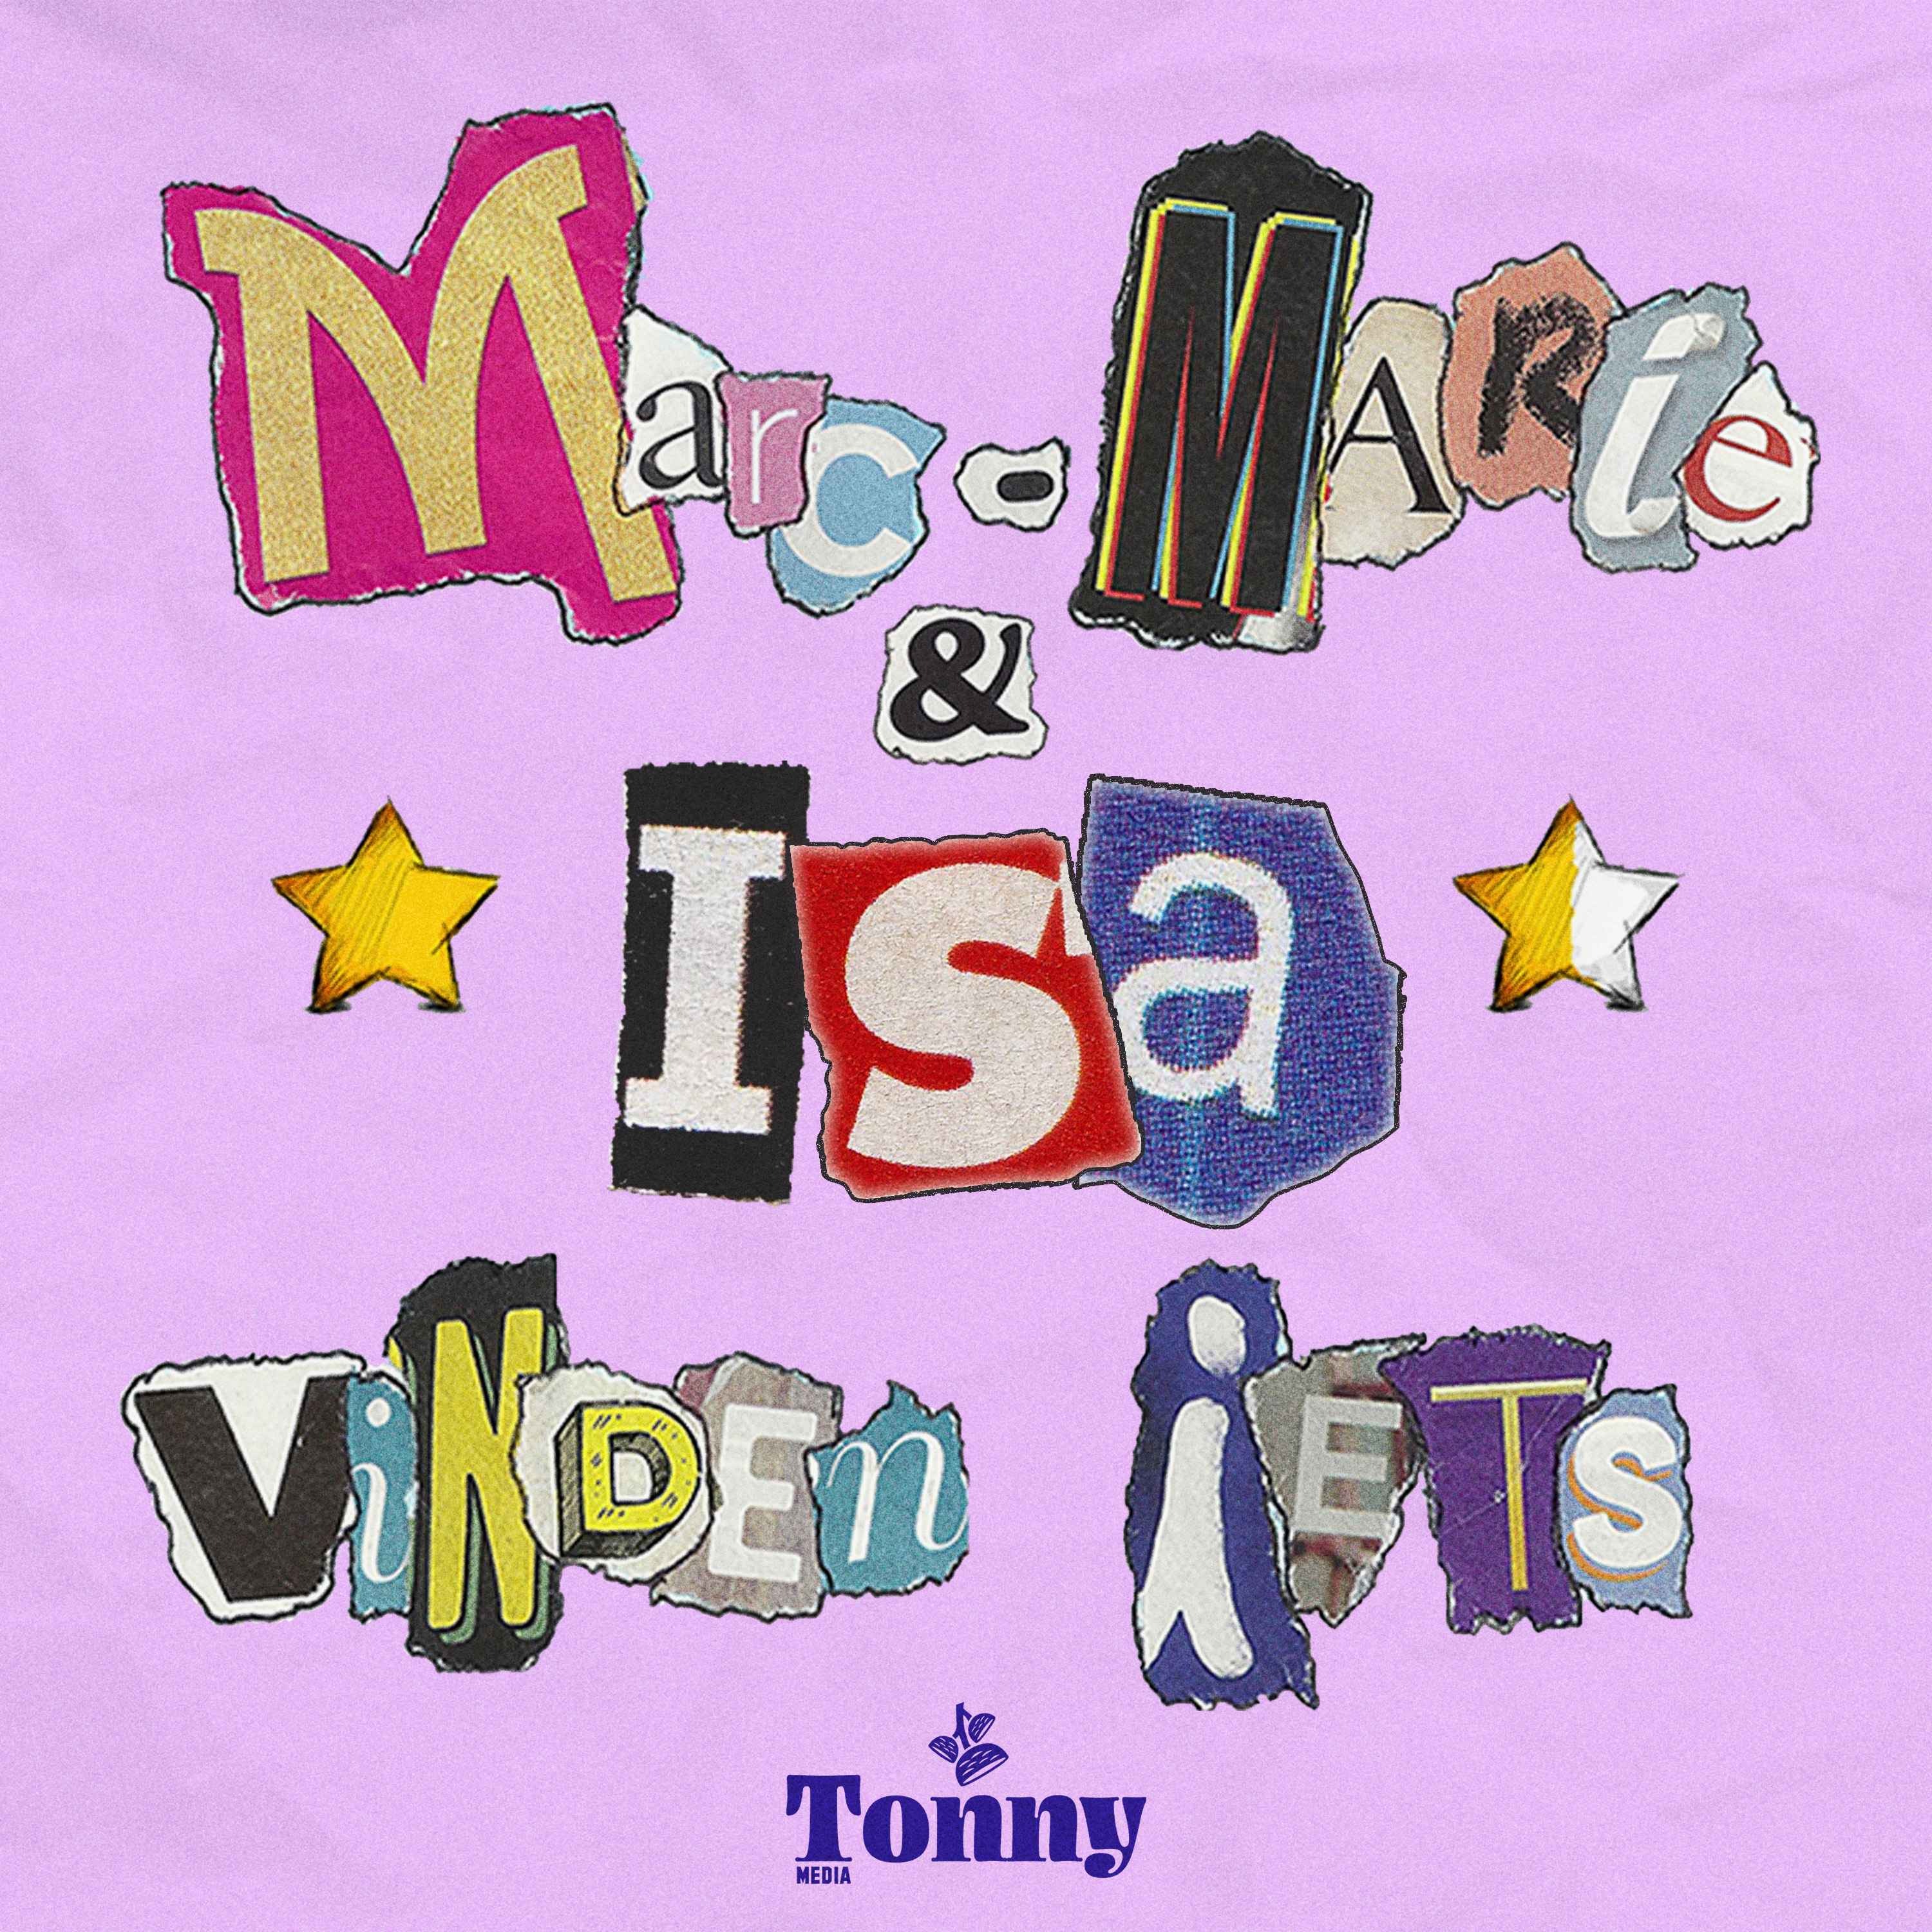 Marc-Marie & Isa Vinden Iets logo